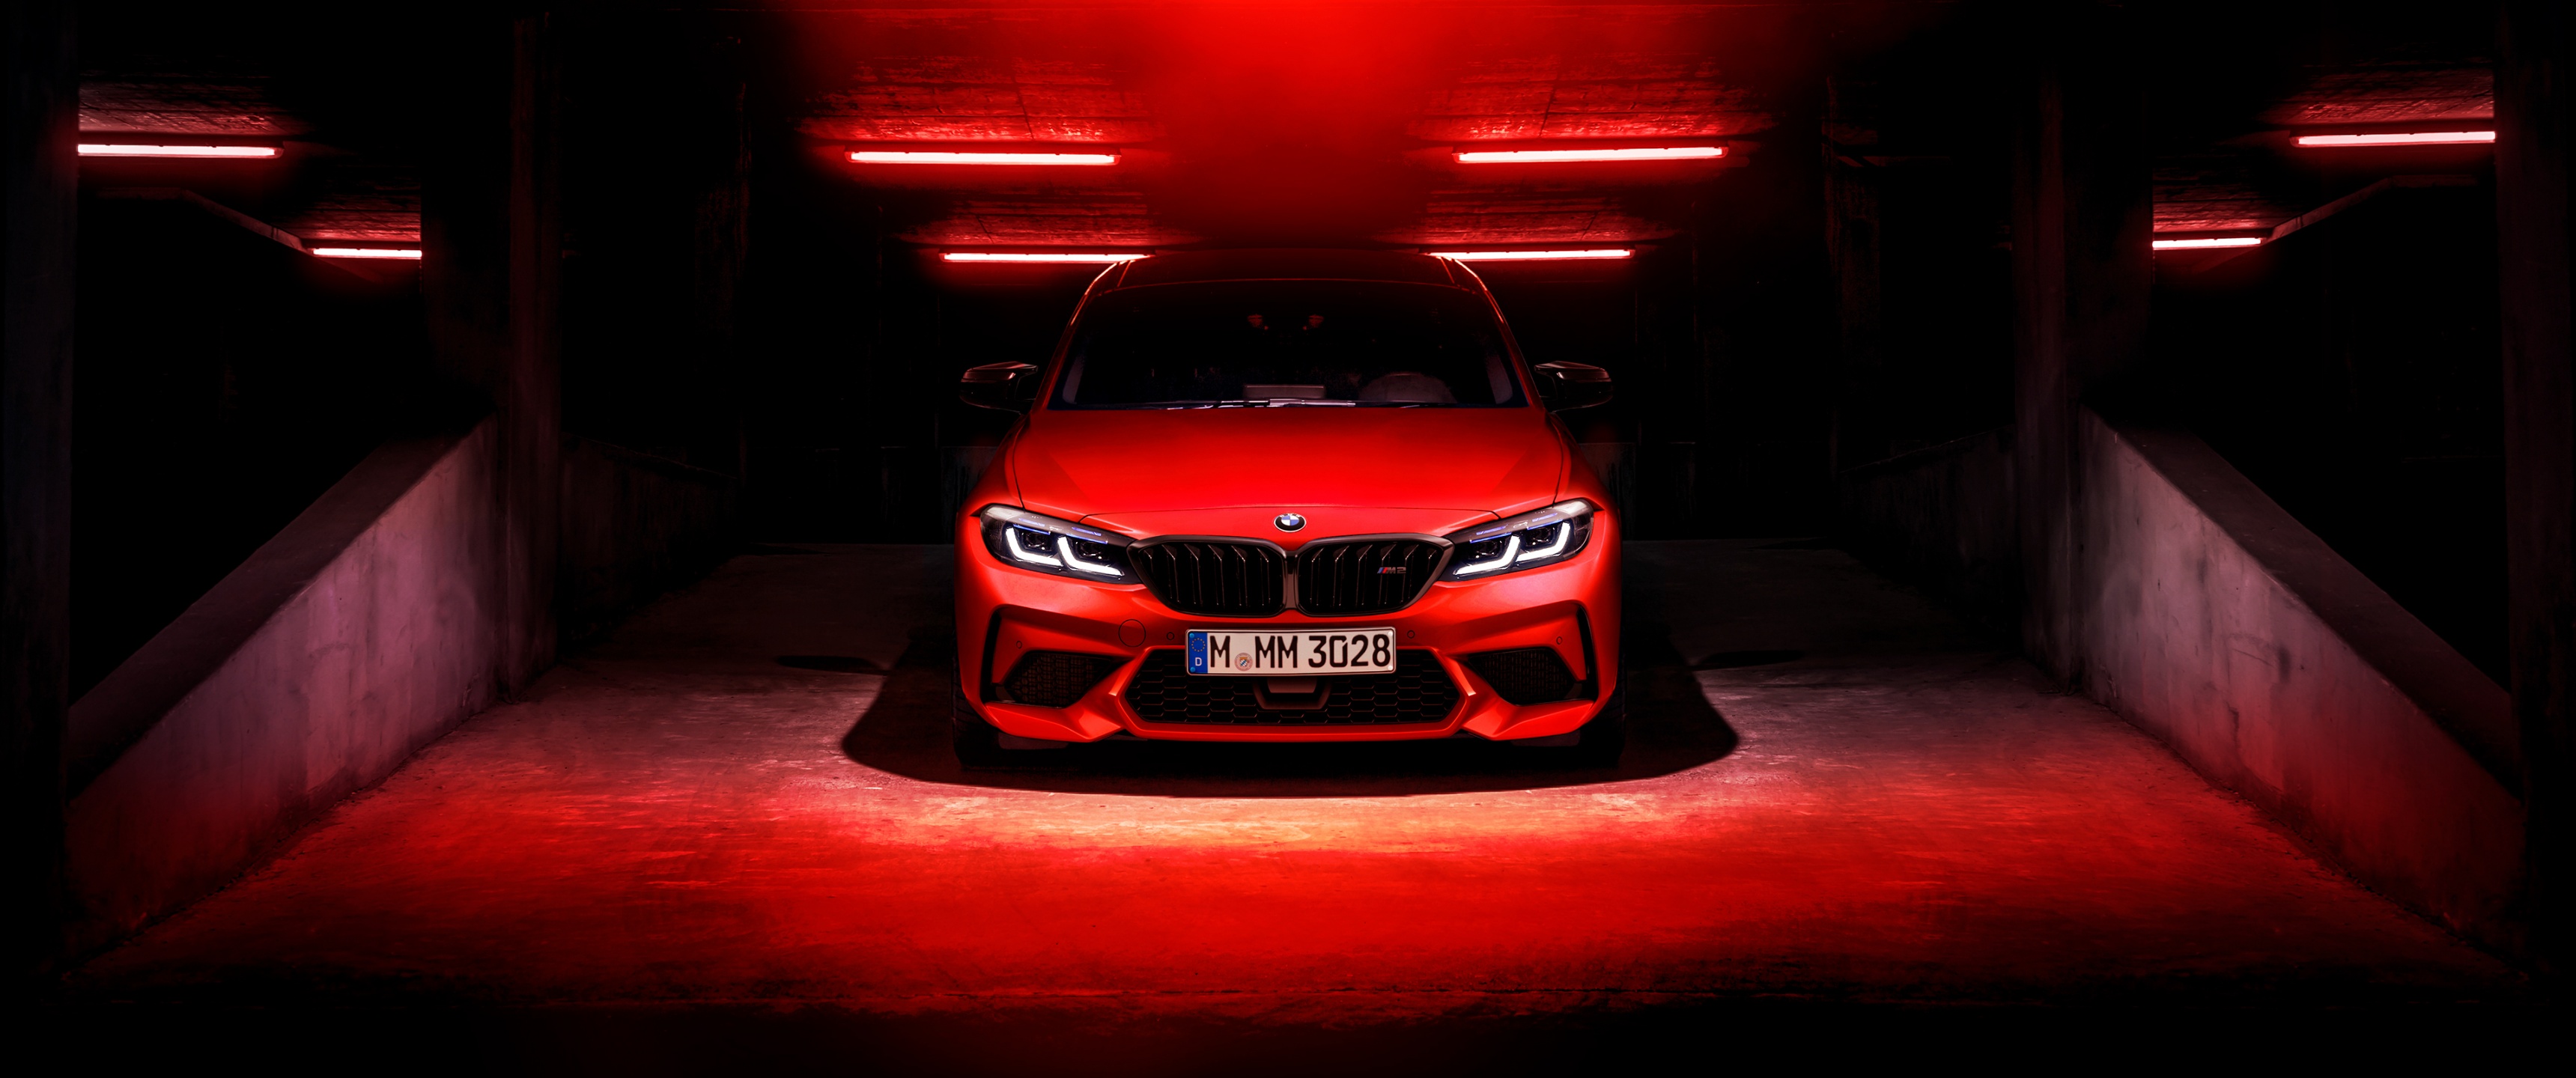 BMW M2: Với thiết kế đầy cá tính, BMW M2 là sự lựa chọn hoàn hảo để trổ tài trên đường đua hay nơi đường phố. Hãy xem hình ảnh chiếc xe BMW M2 để khám phá một siêu phẩm thể thao đích thực.